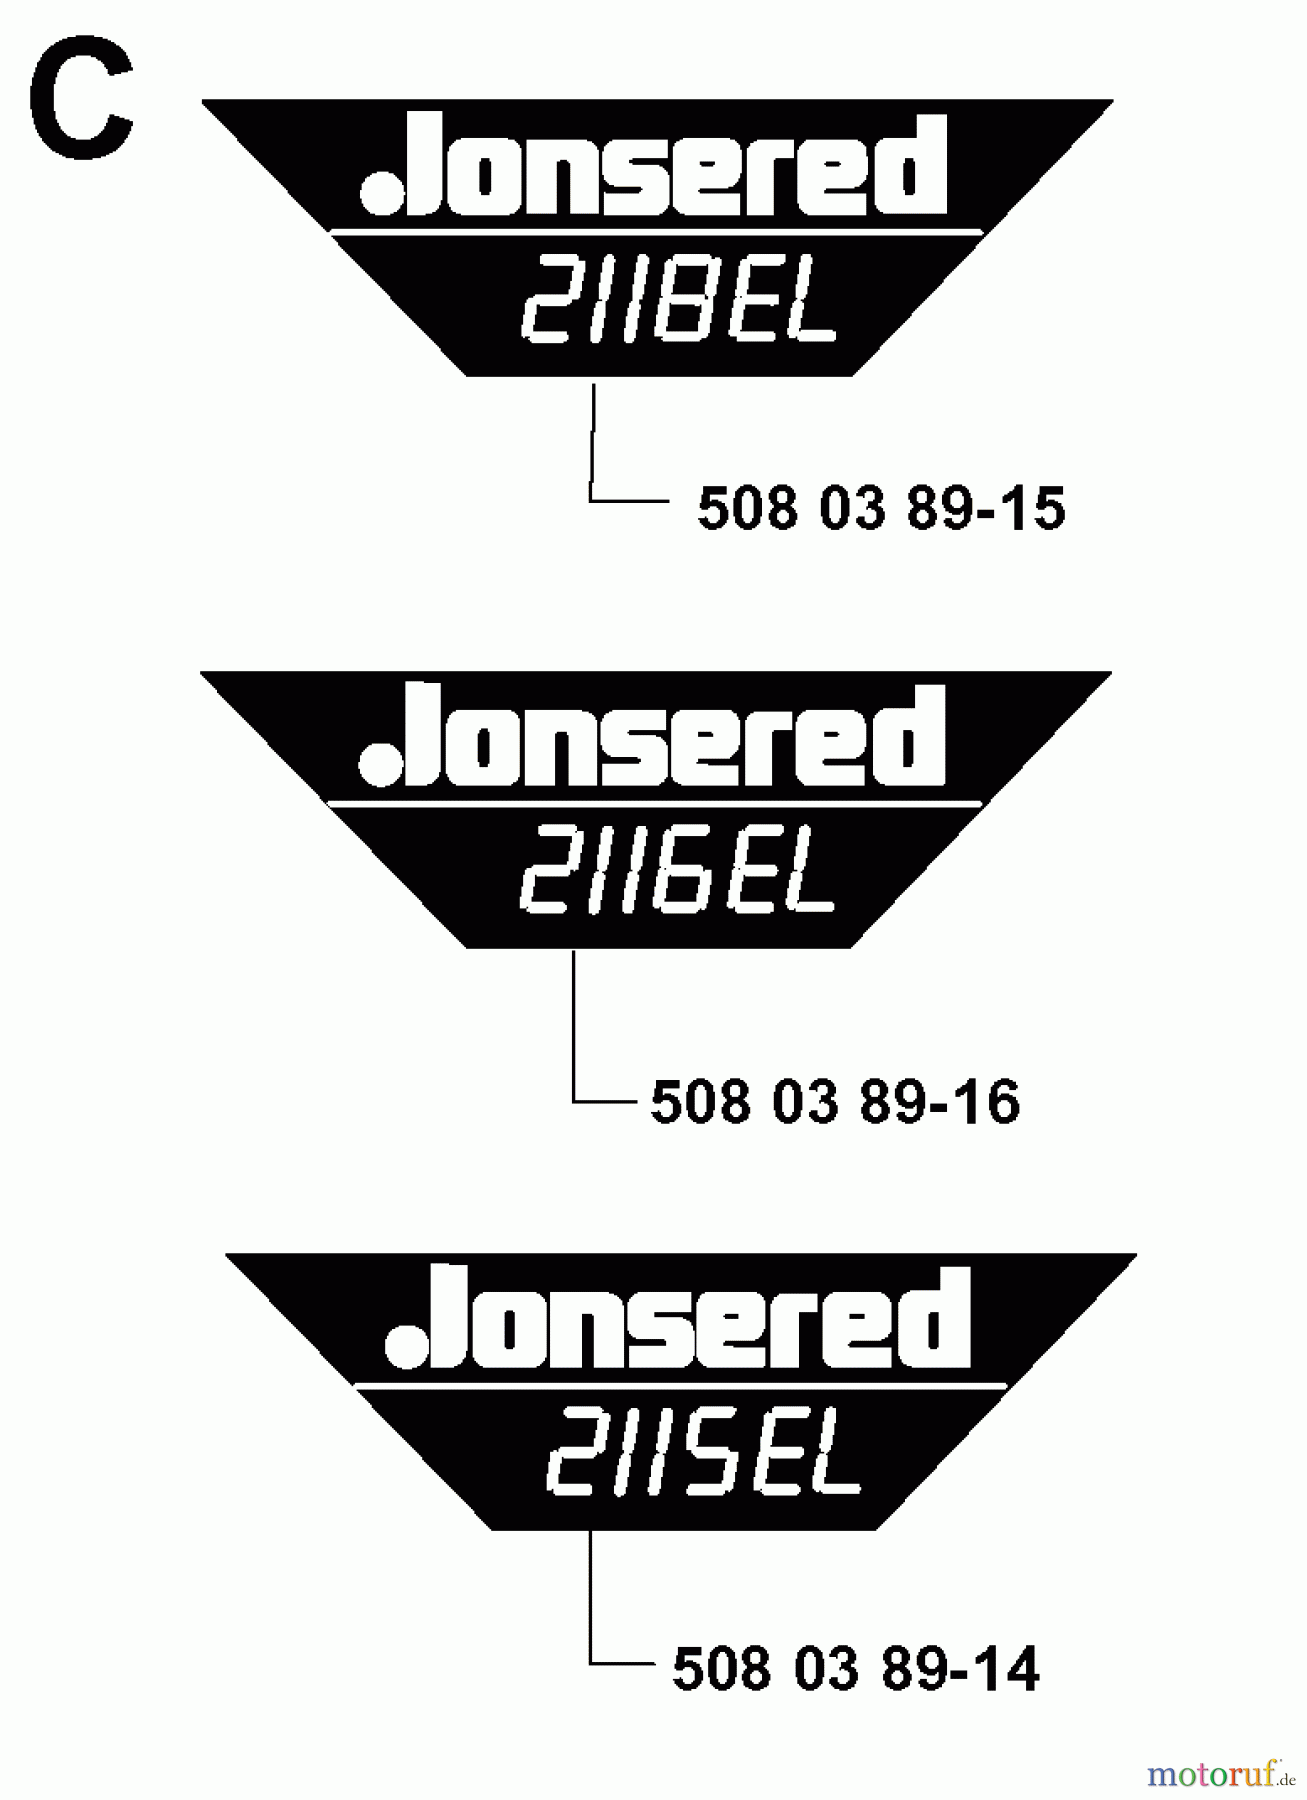  Jonsered Motorsägen 2116EL - Jonsered Chainsaw (2000-02) DECALS